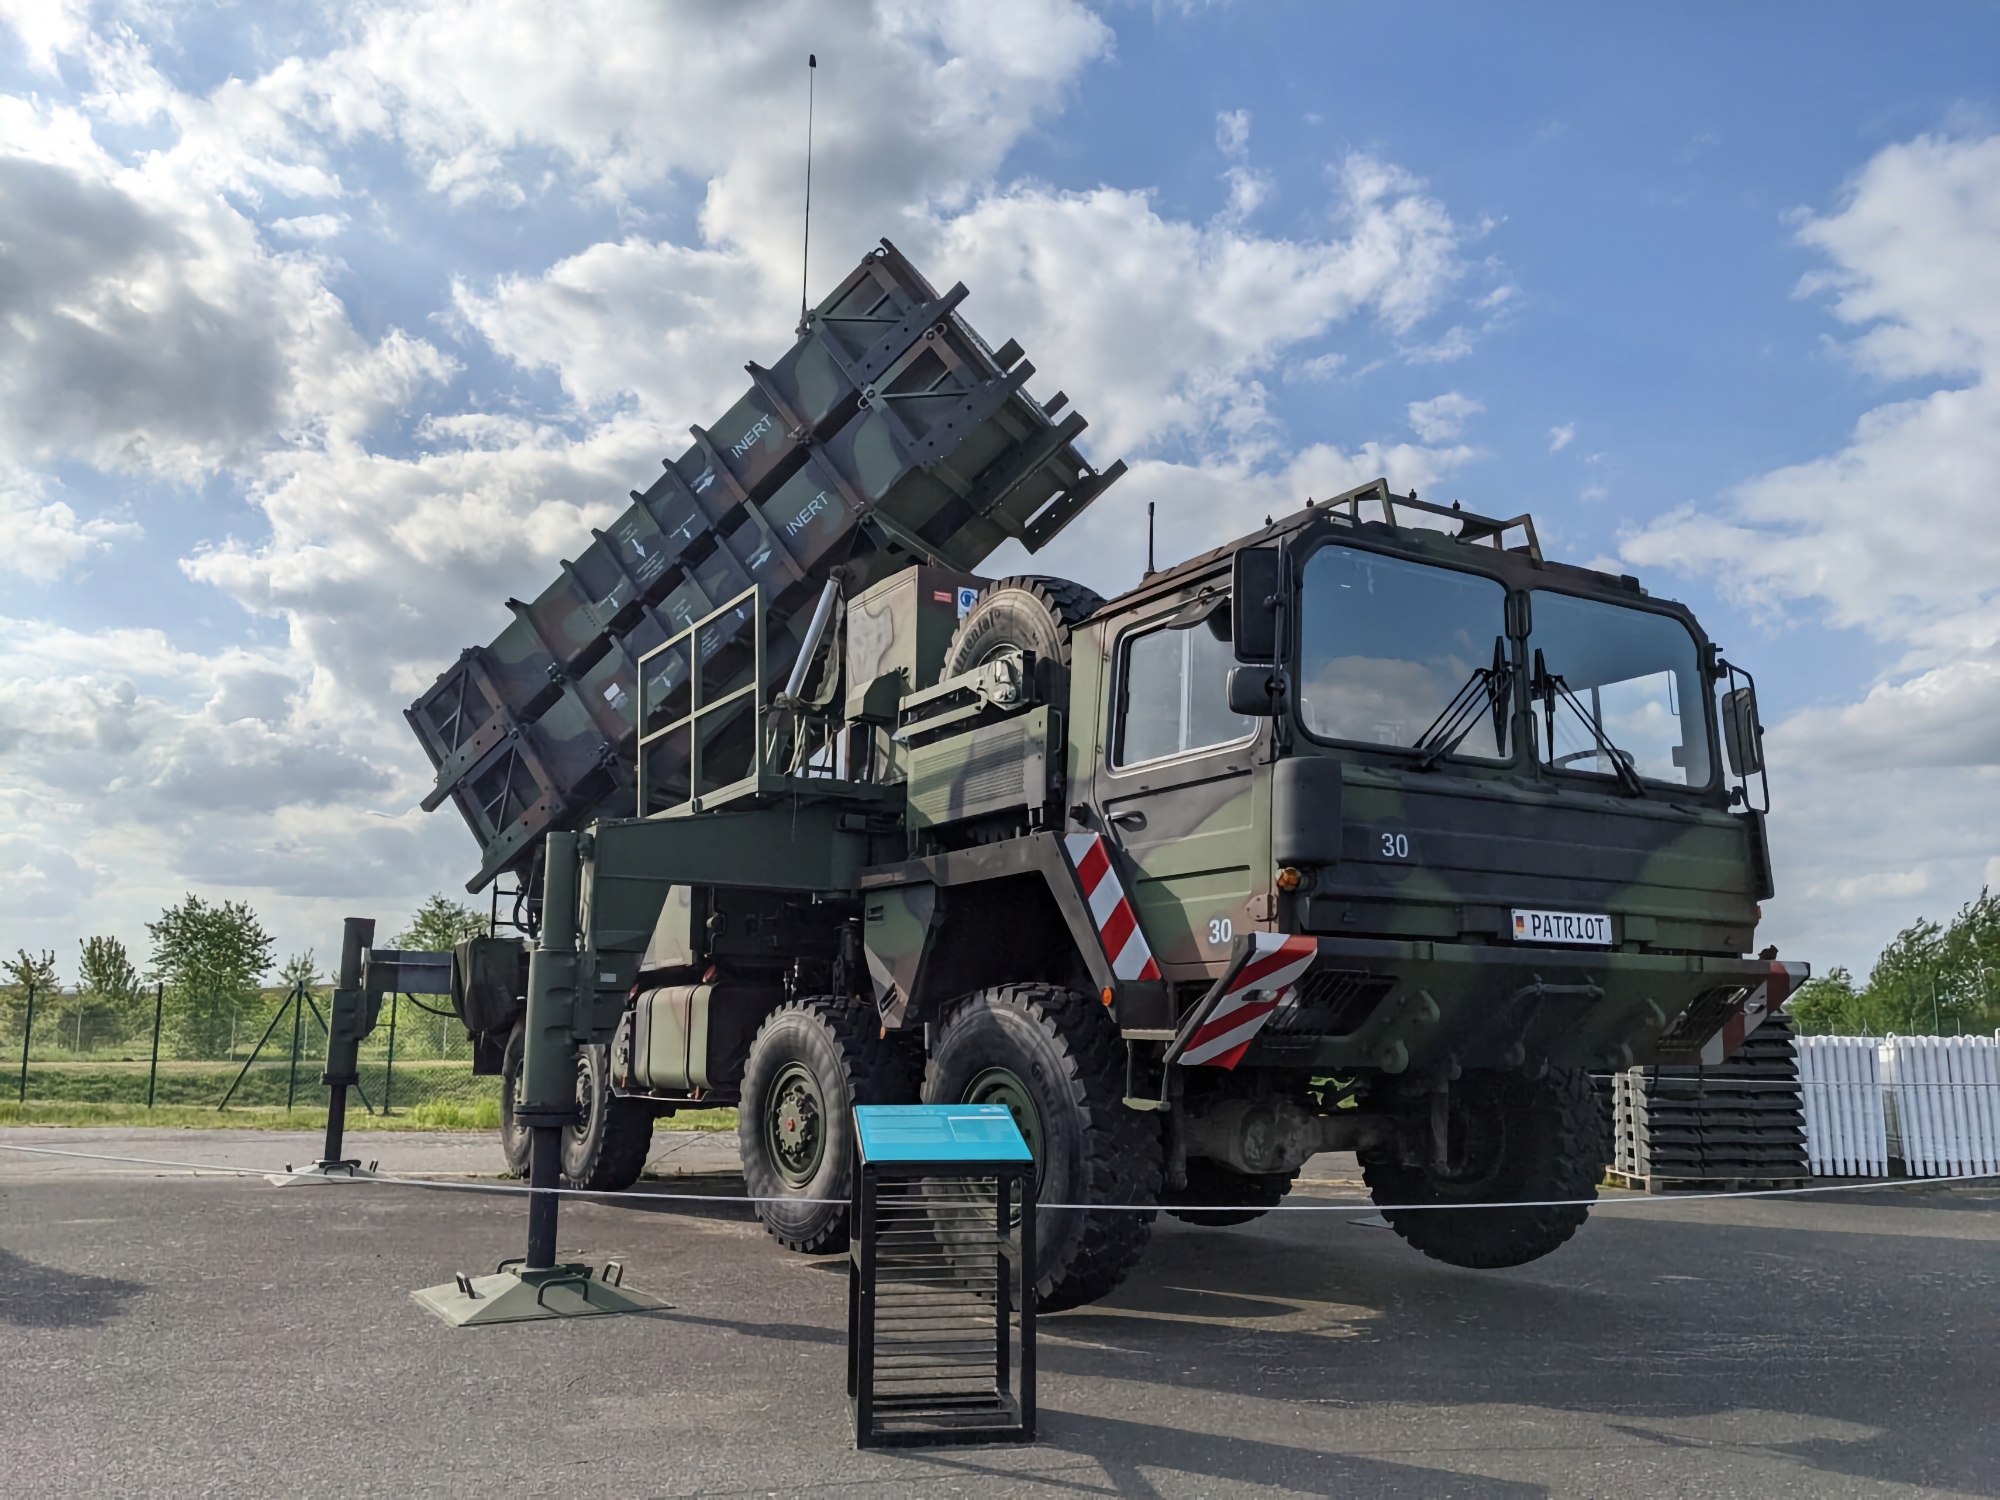 Tyskland overfører ytterligere MIM-104 Patriot bakke-til-luft-missilsystem til Ukraina